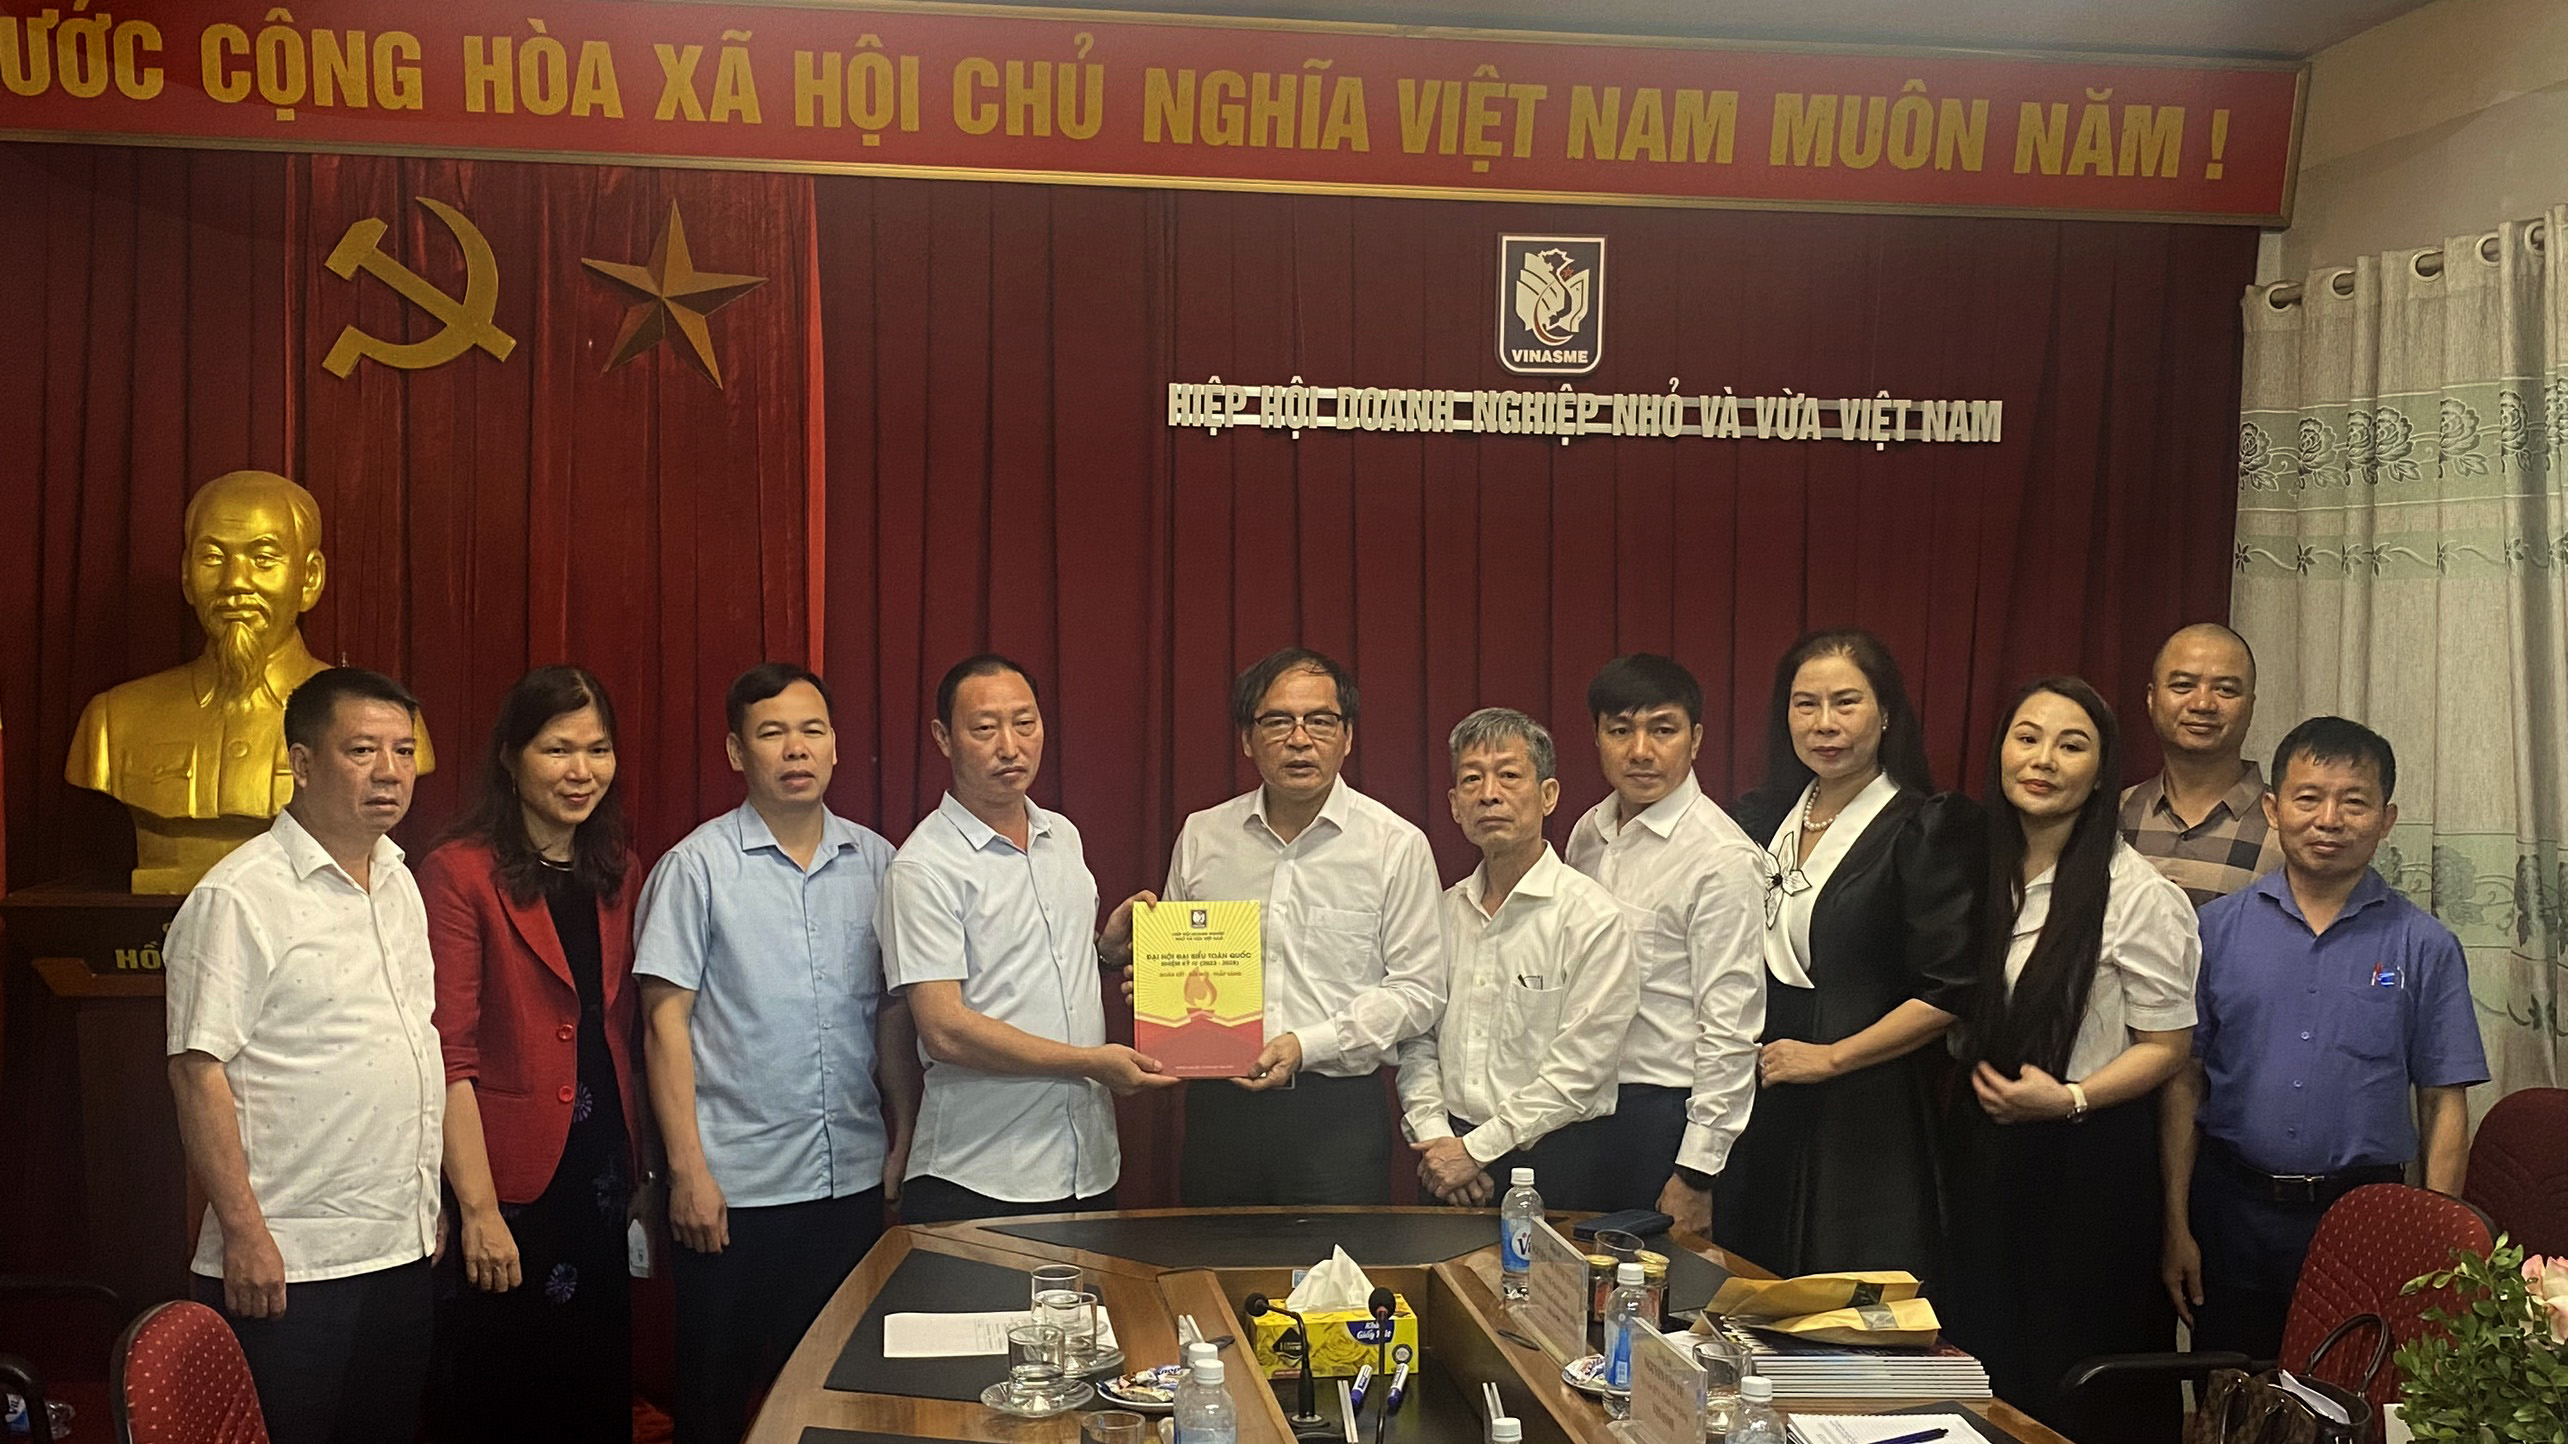 Đoàn công tác của huyện Hoàng Su Phì thăm và làm việc với Hiệp hội doanh nghiệp nhỏ và vừa Việt Nam